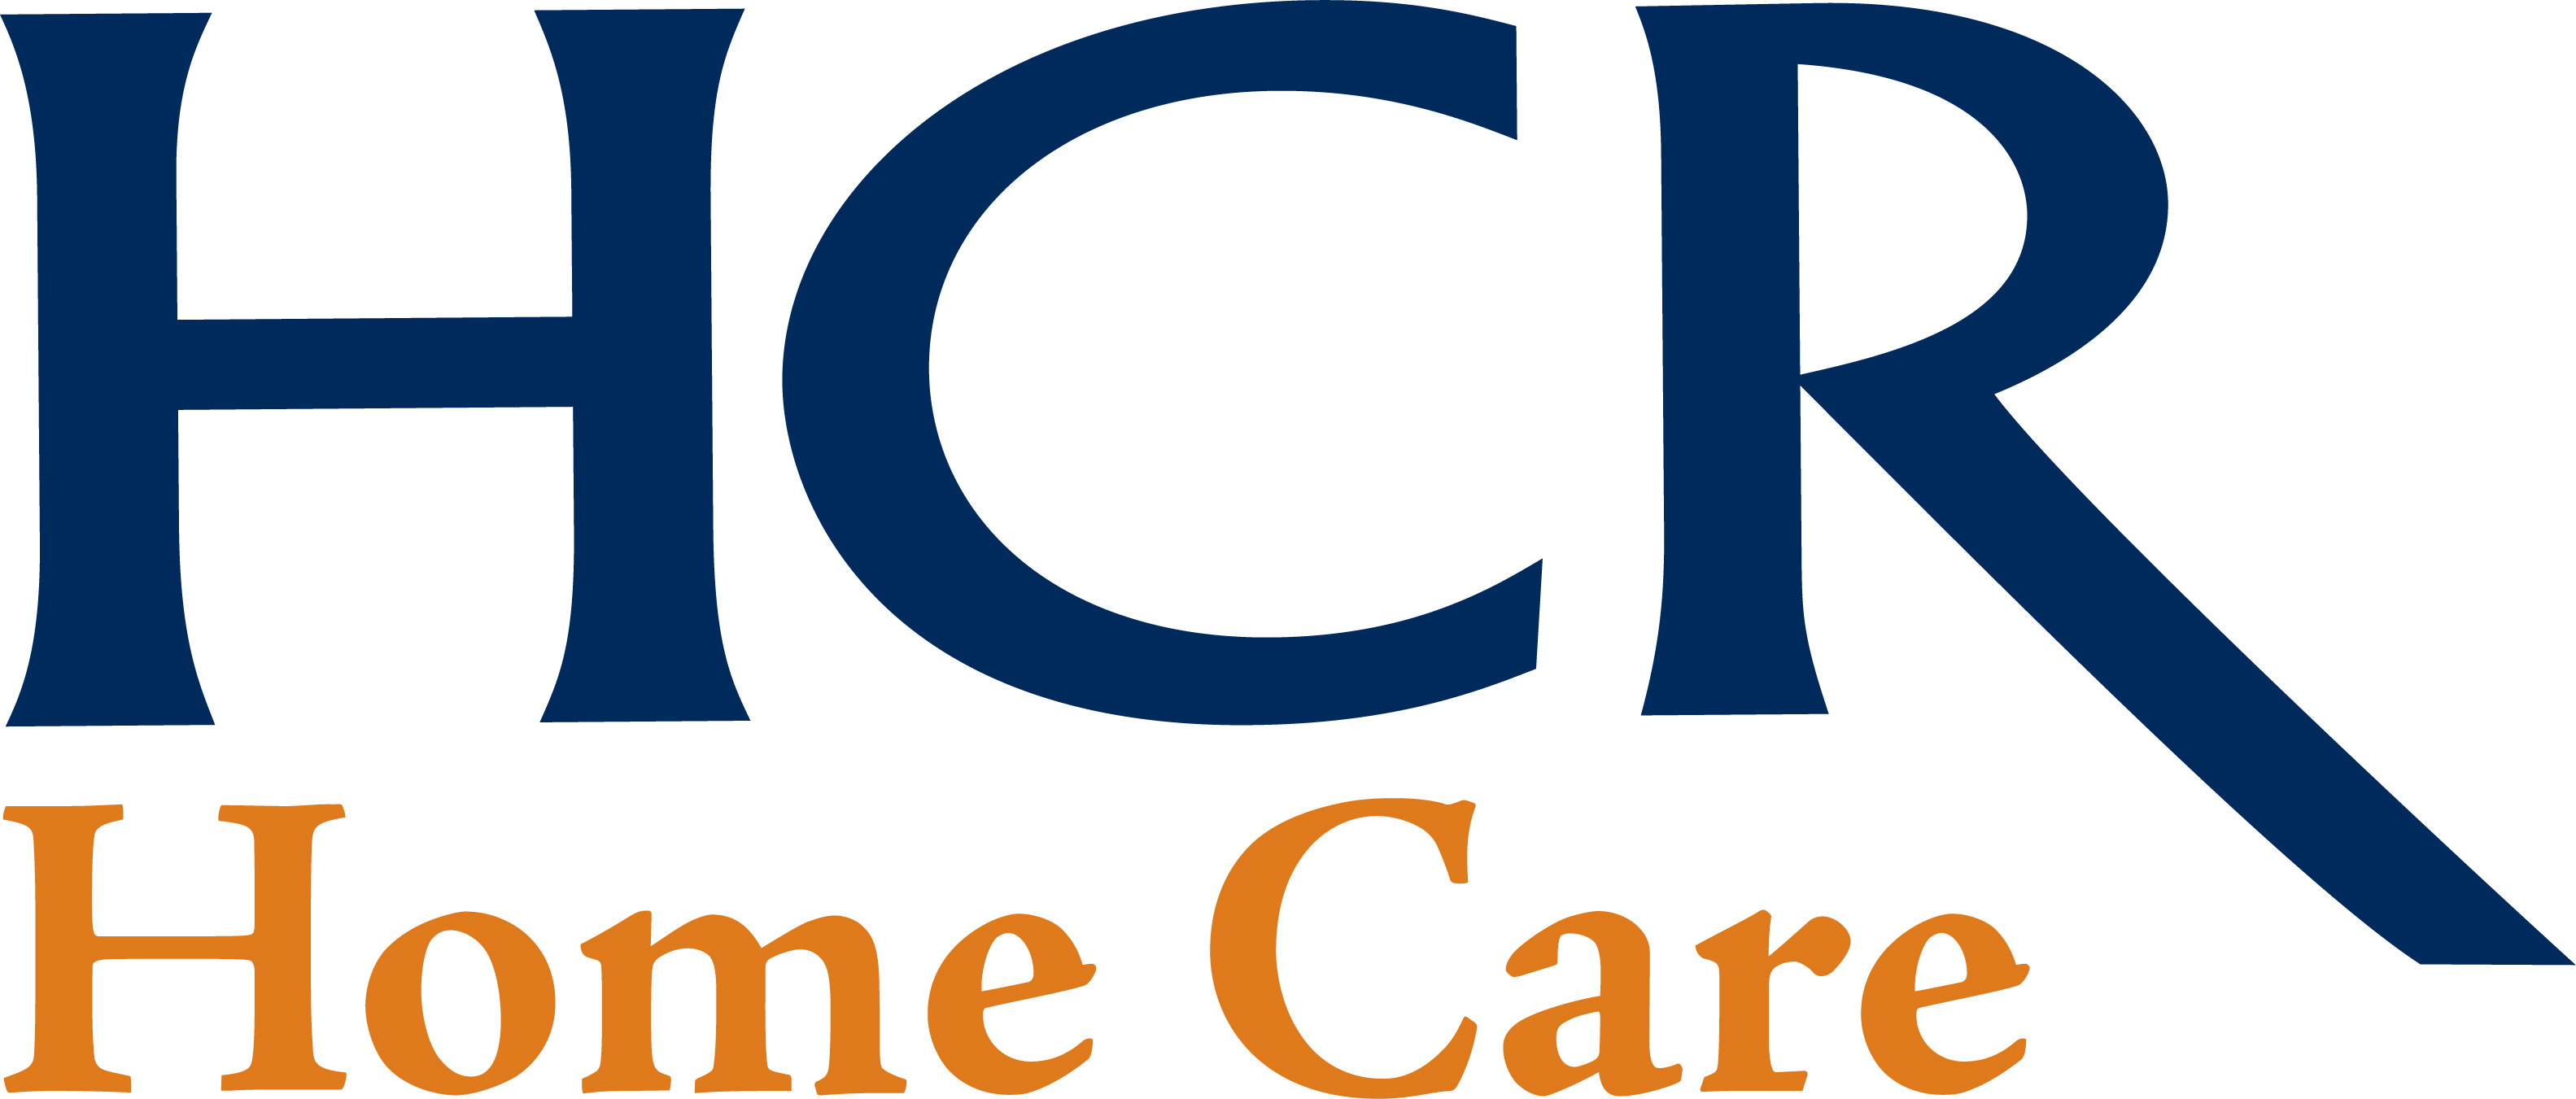 HCR Home Care Company Logo